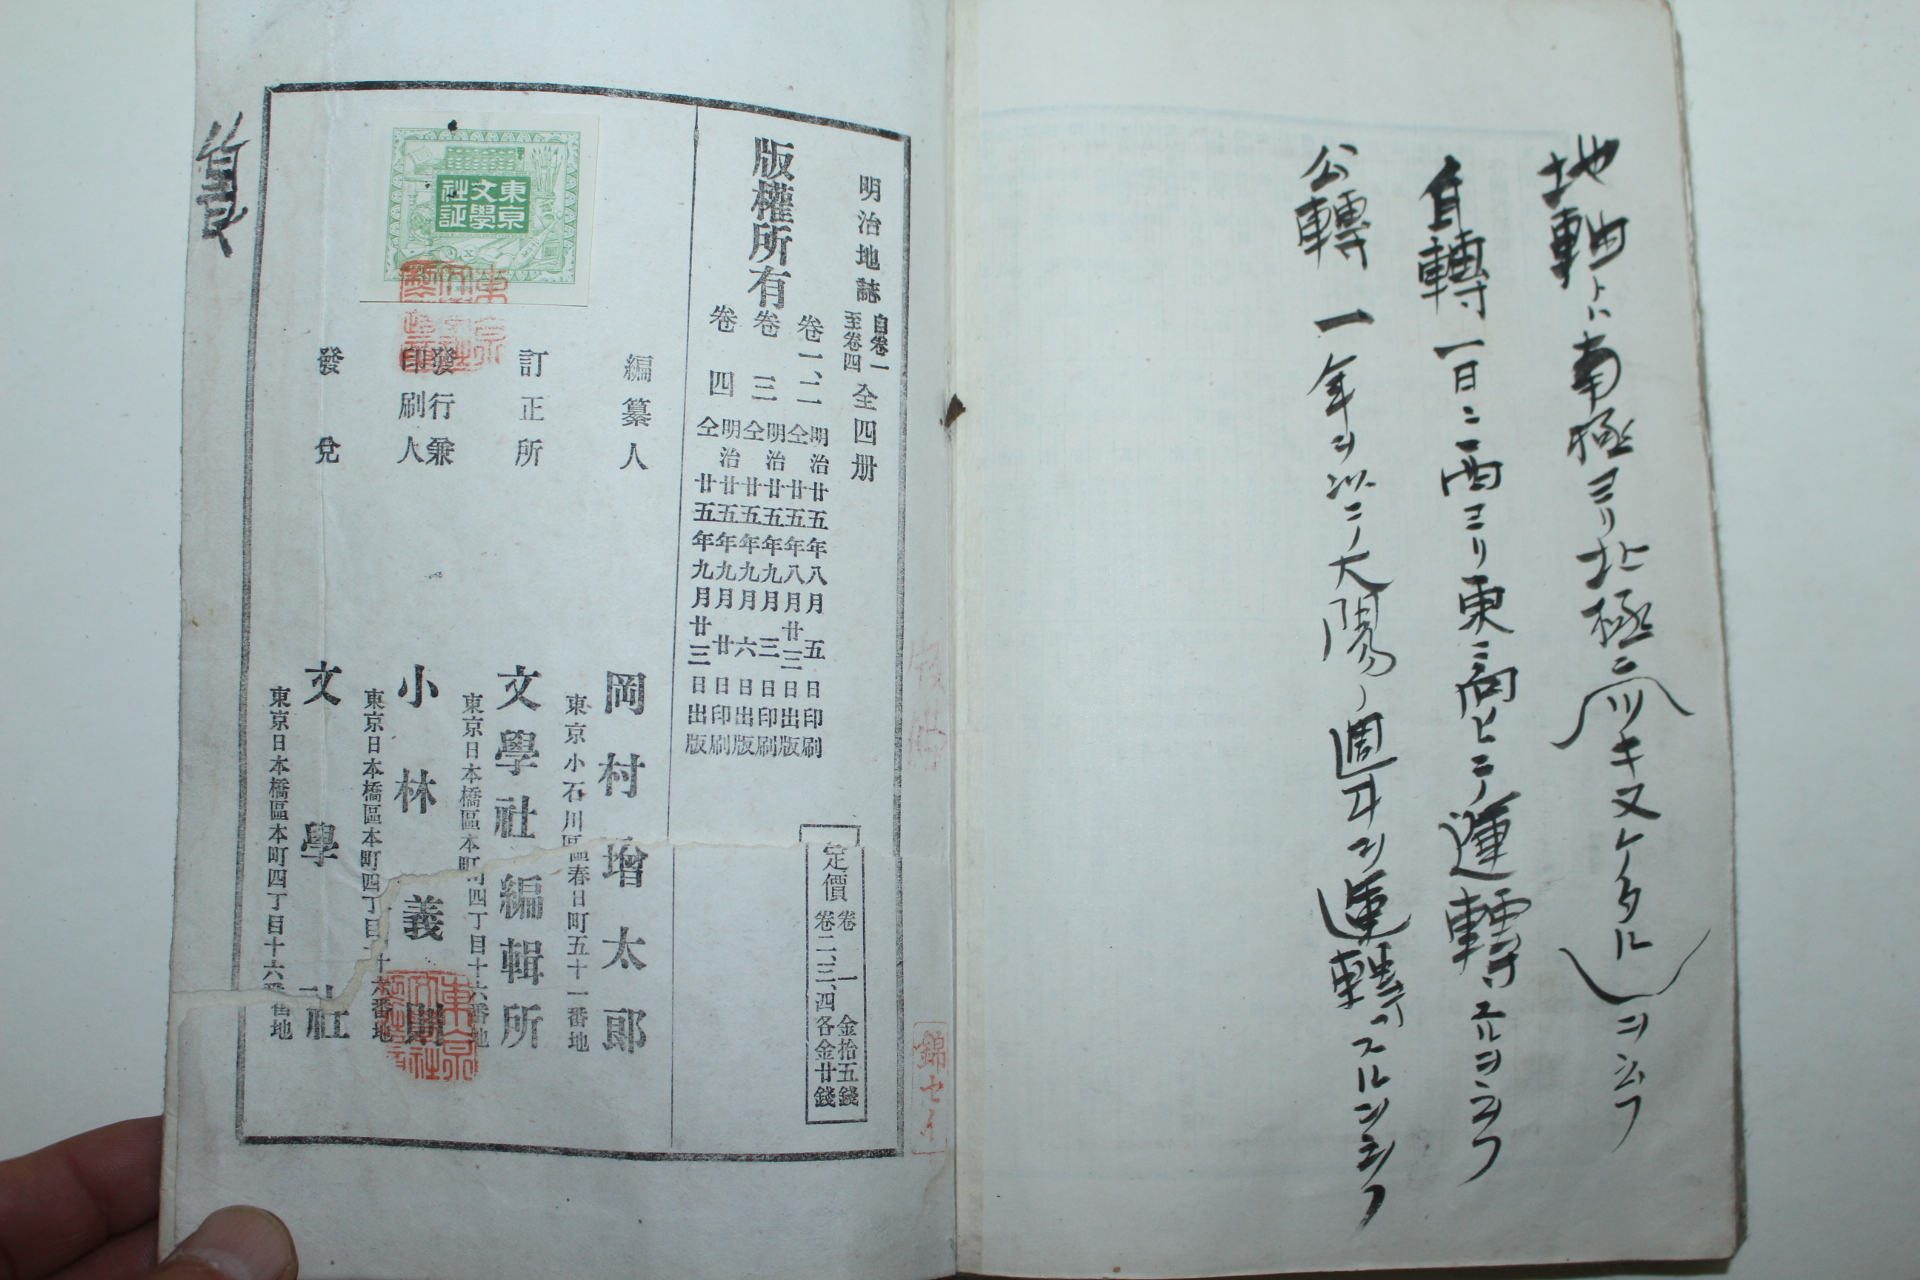 1892년(명치25년) 일본목판본 명치지지(明治地誌) 권3